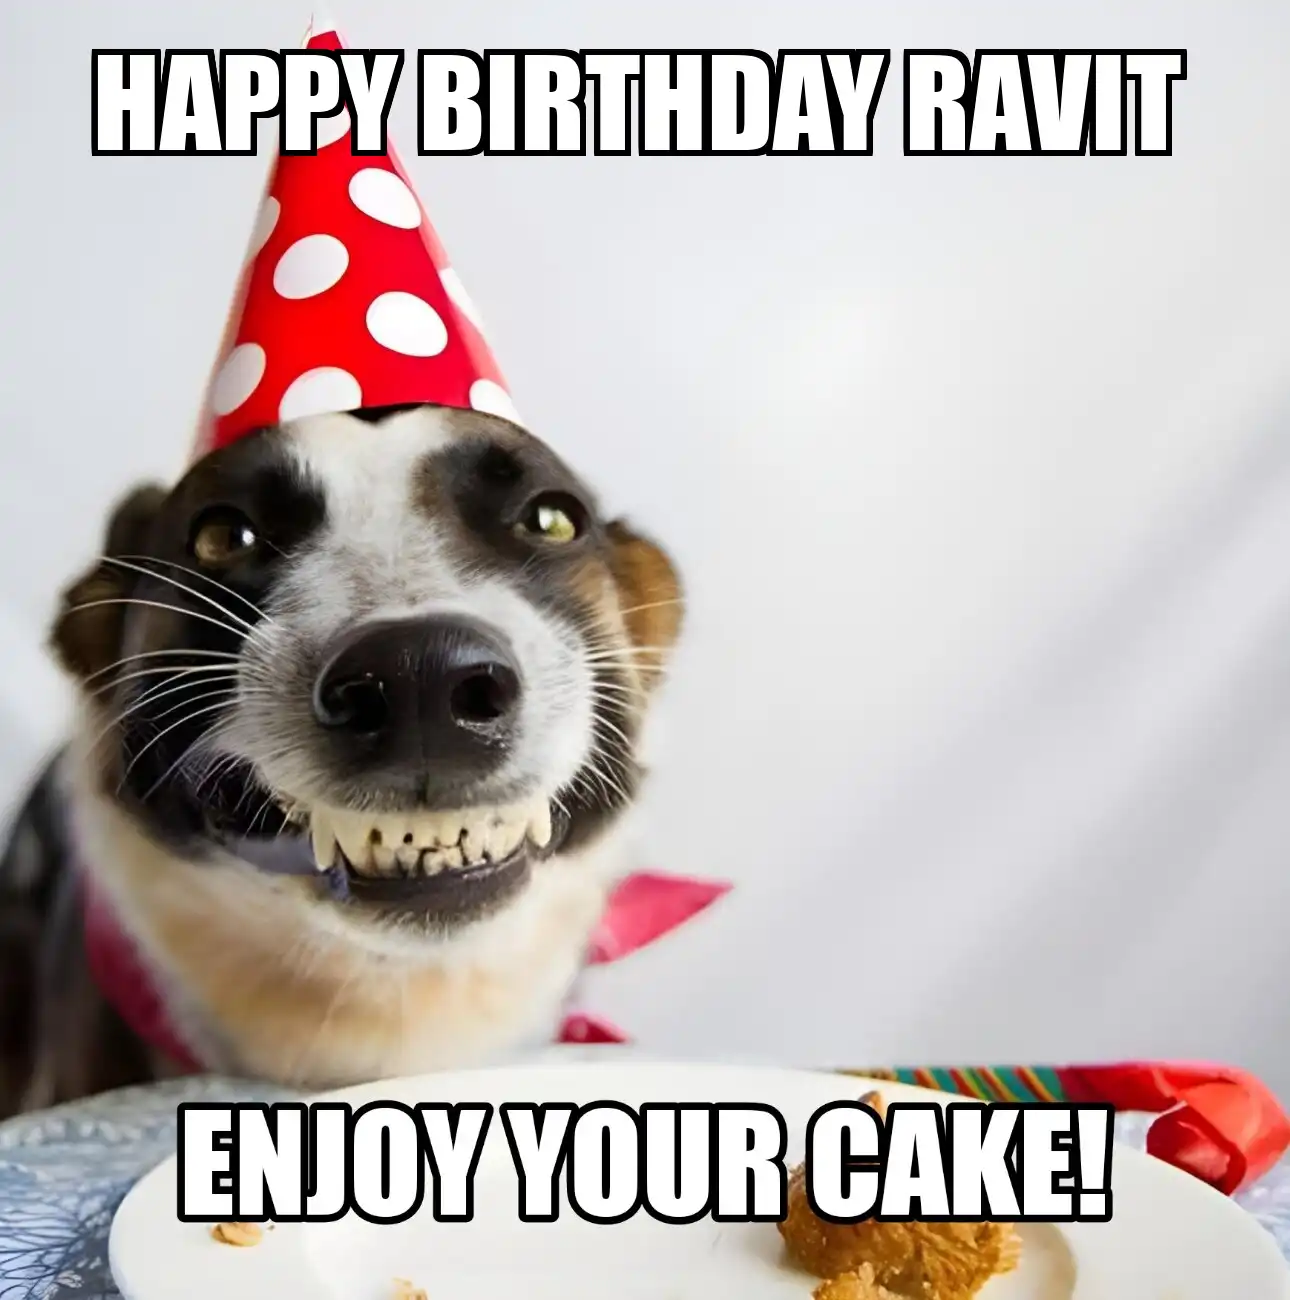 Happy Birthday Ravit Enjoy Your Cake Dog Meme